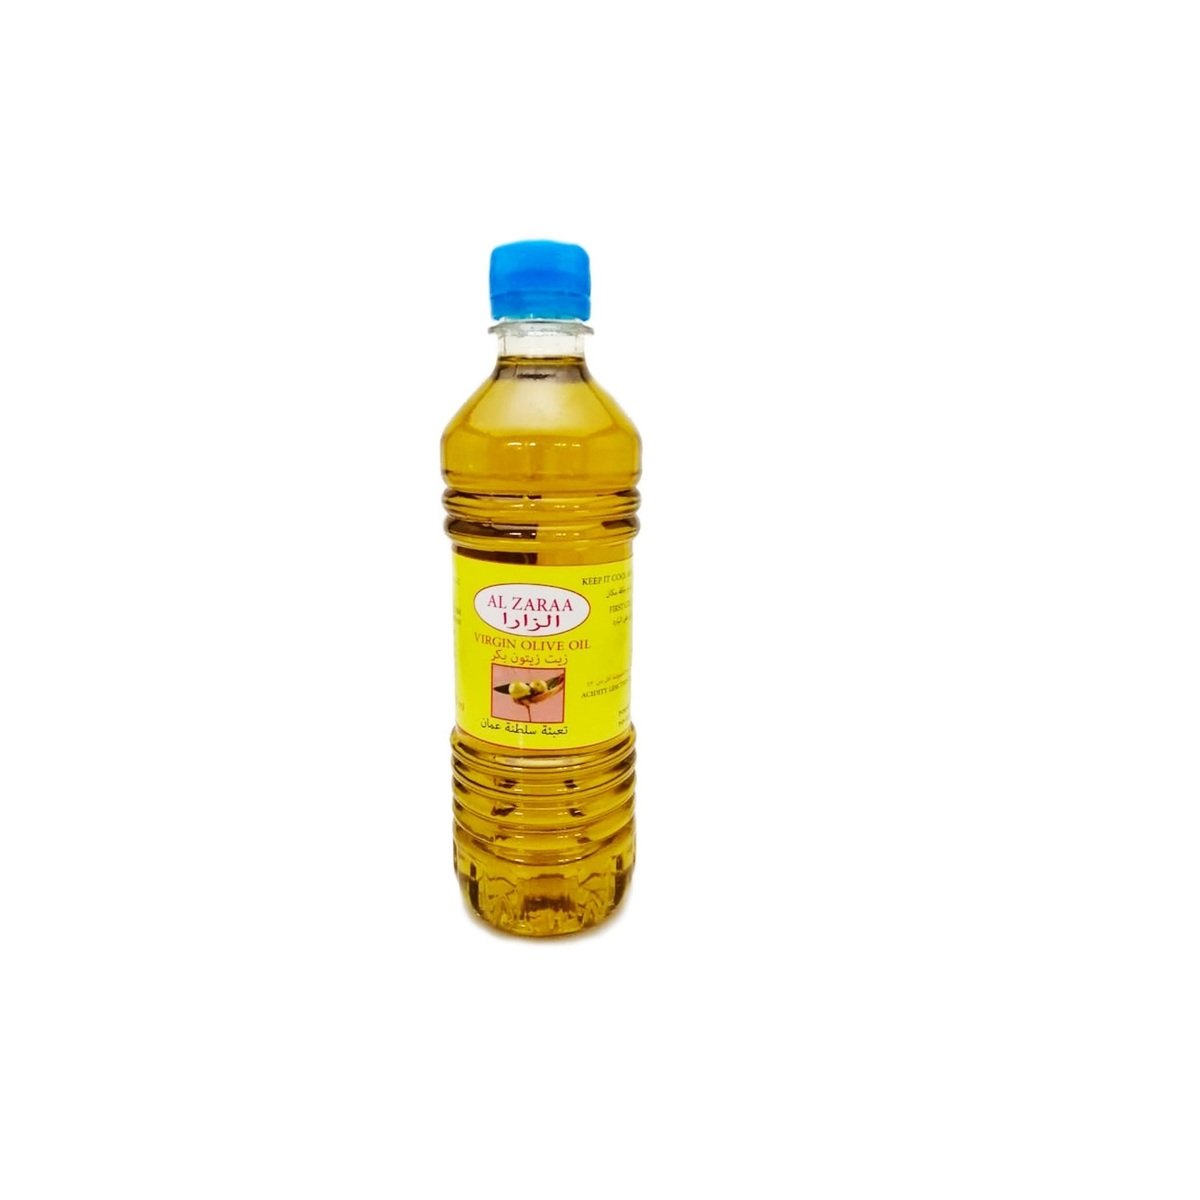 Al Zaraa Jordan Virgin Olive Oil  500ml